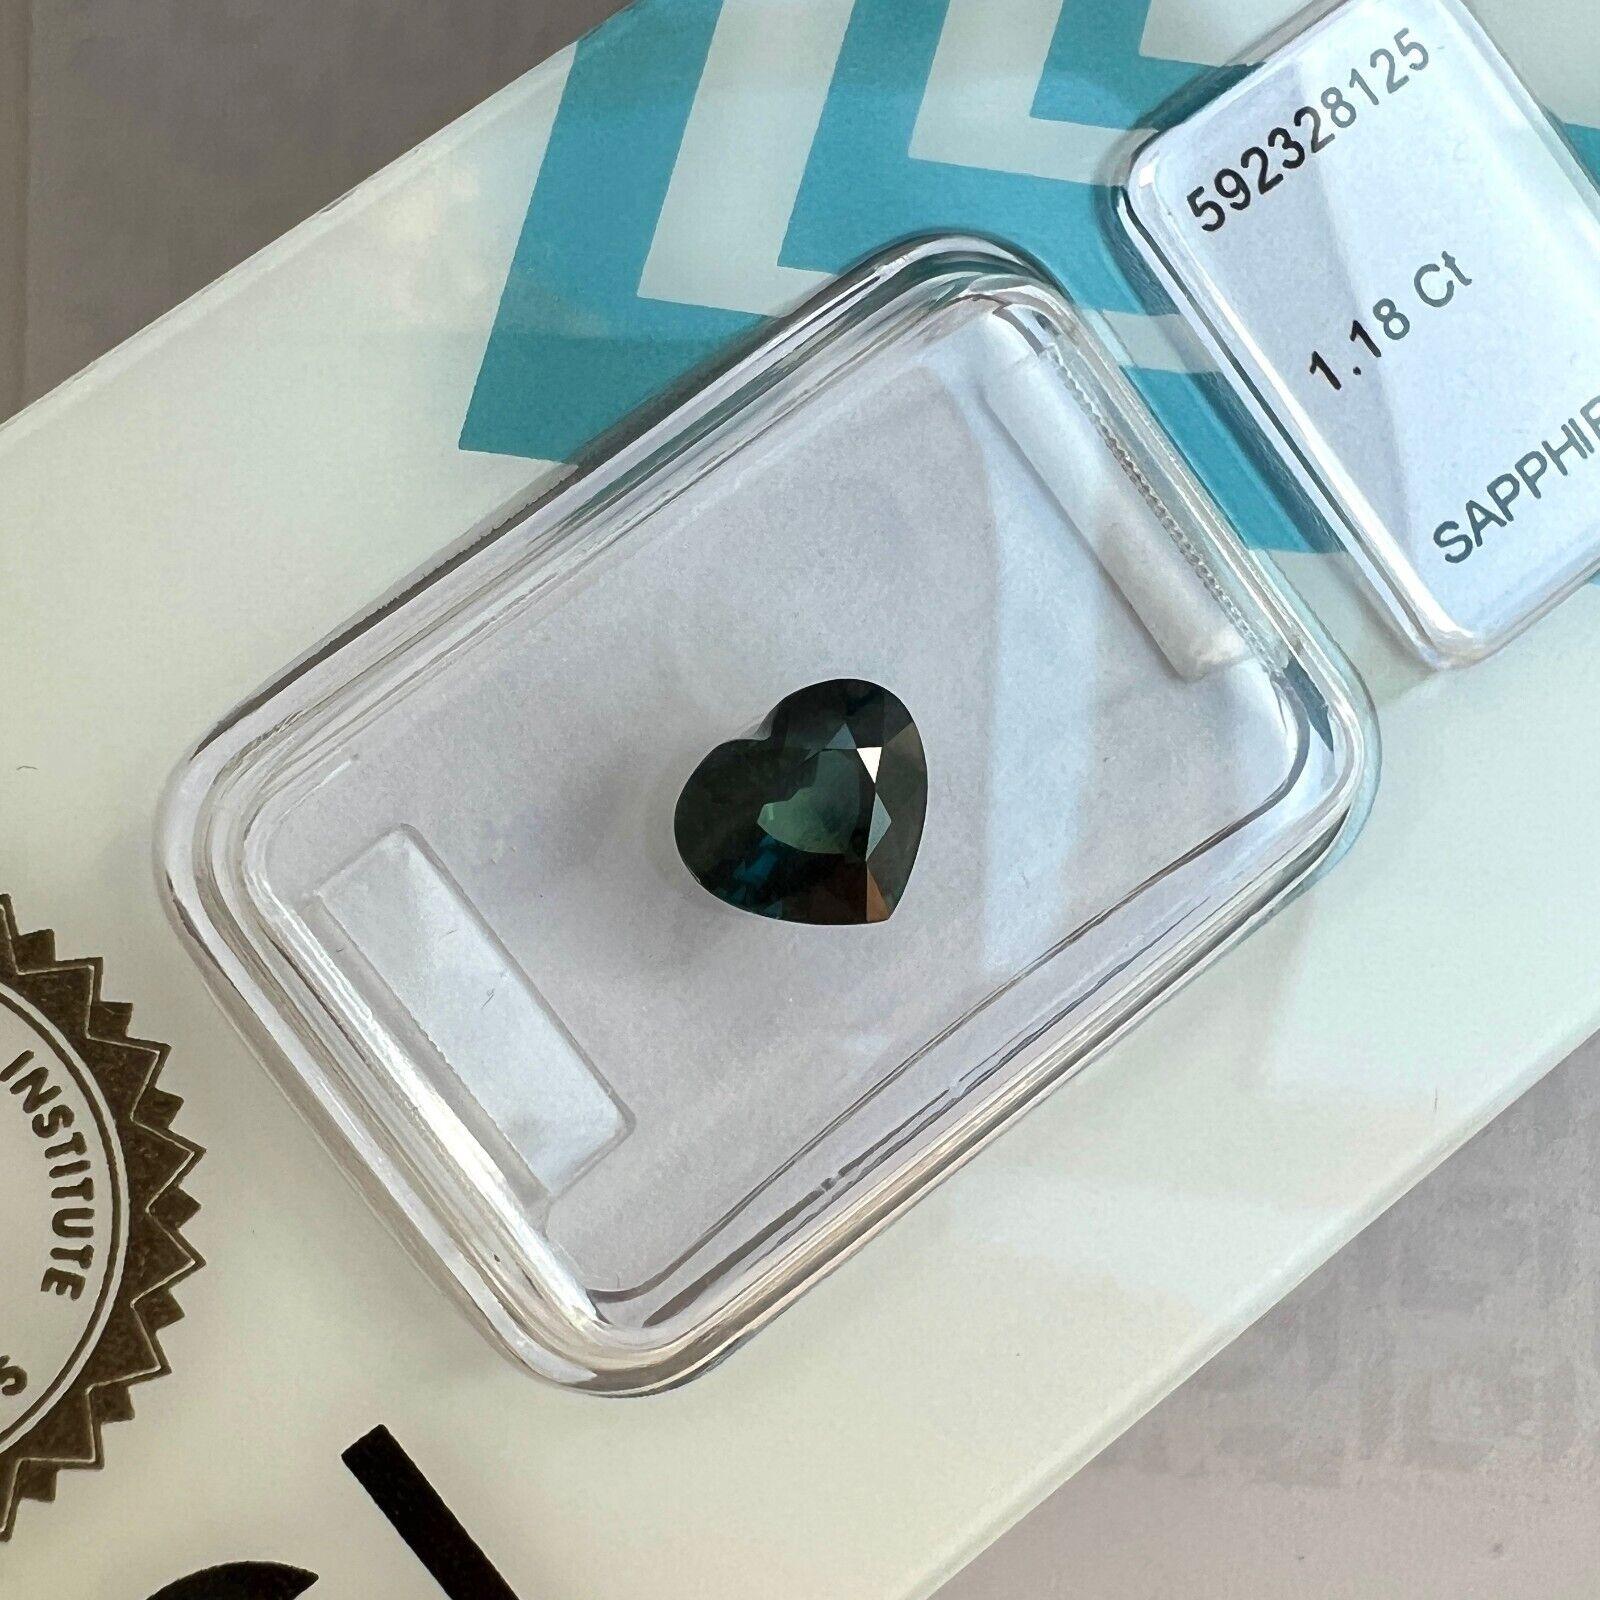 Saphir bleu sarcelle vert profond taille cœur certifié IGI de 1,18 carat

Saphir 'Teal' d'un bleu vert profond sous blister IGI.
1,18 carat avec une excellente coupe en cœur et une excellente clarté, pierre propre. VS.
Ce saphir est également